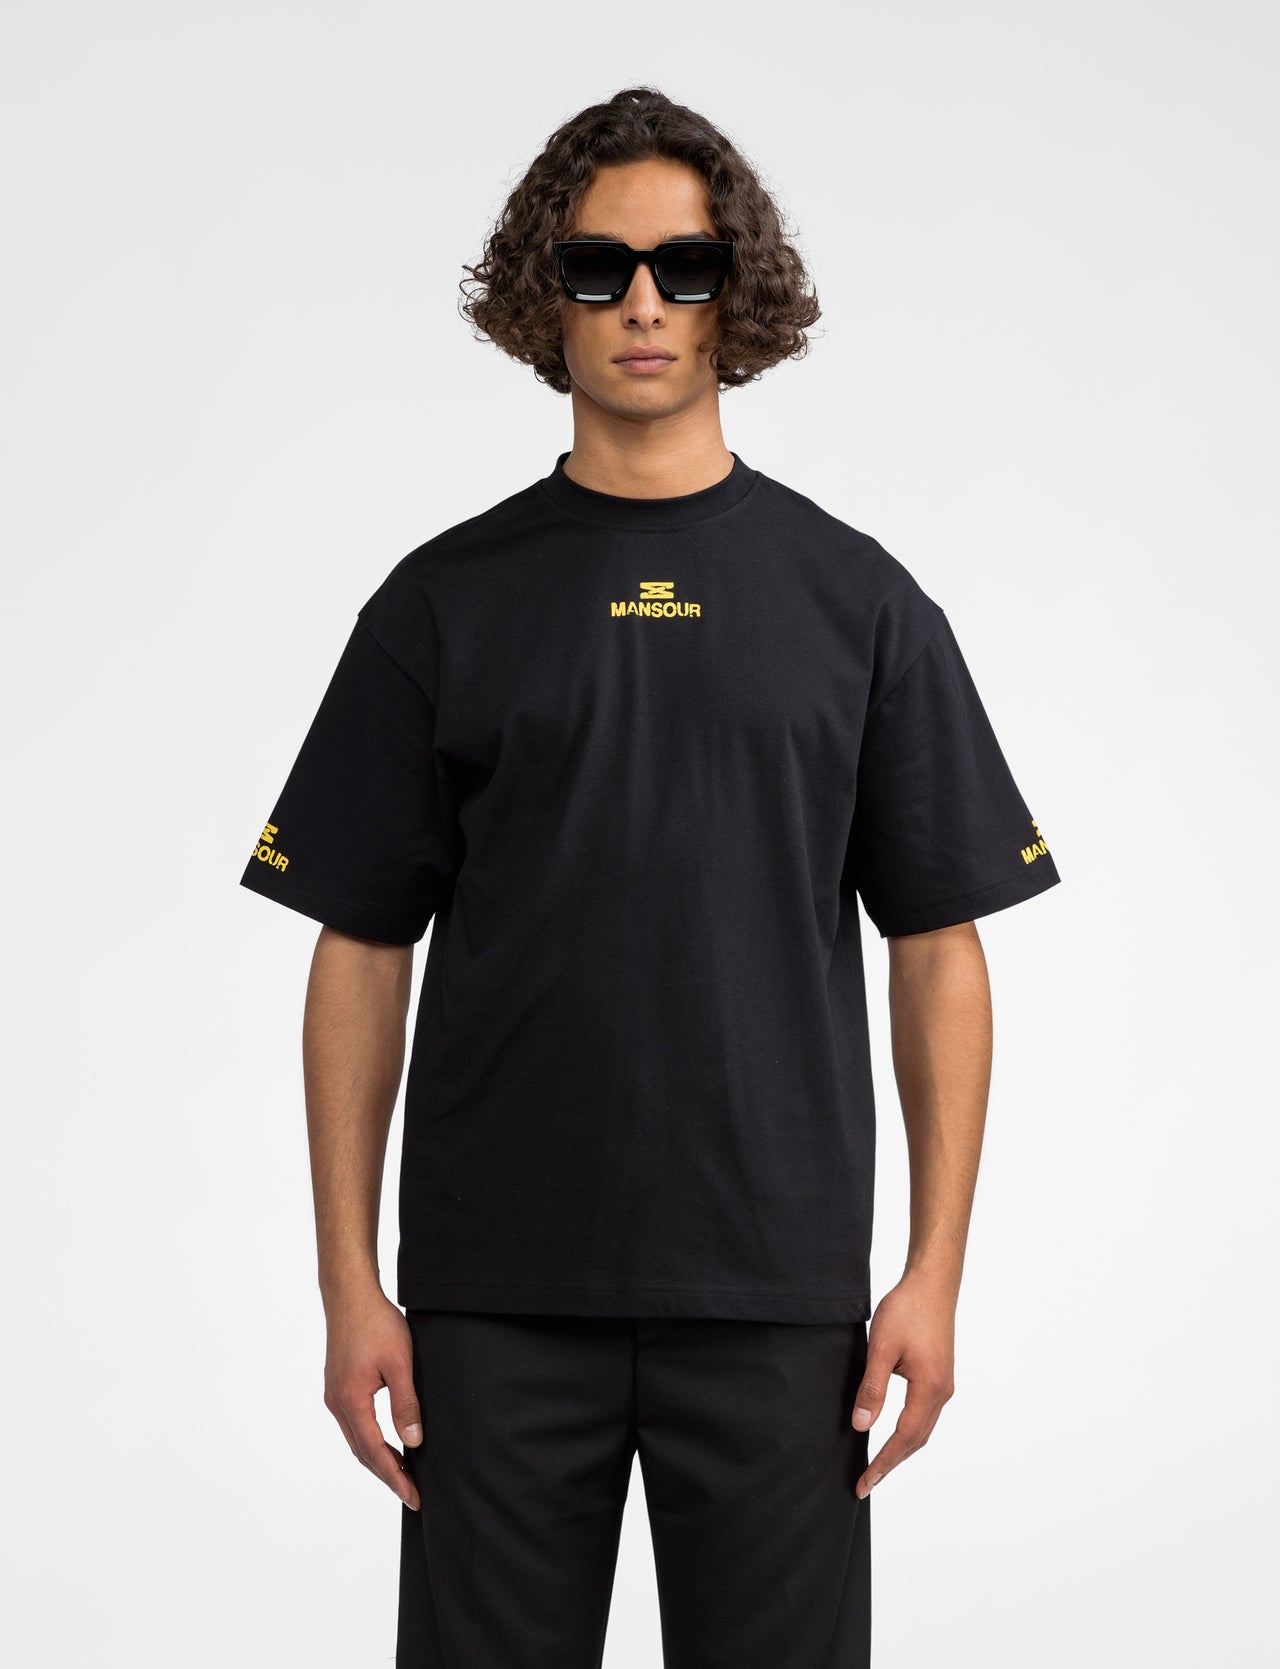 Hourglass track t-shirt yellow black